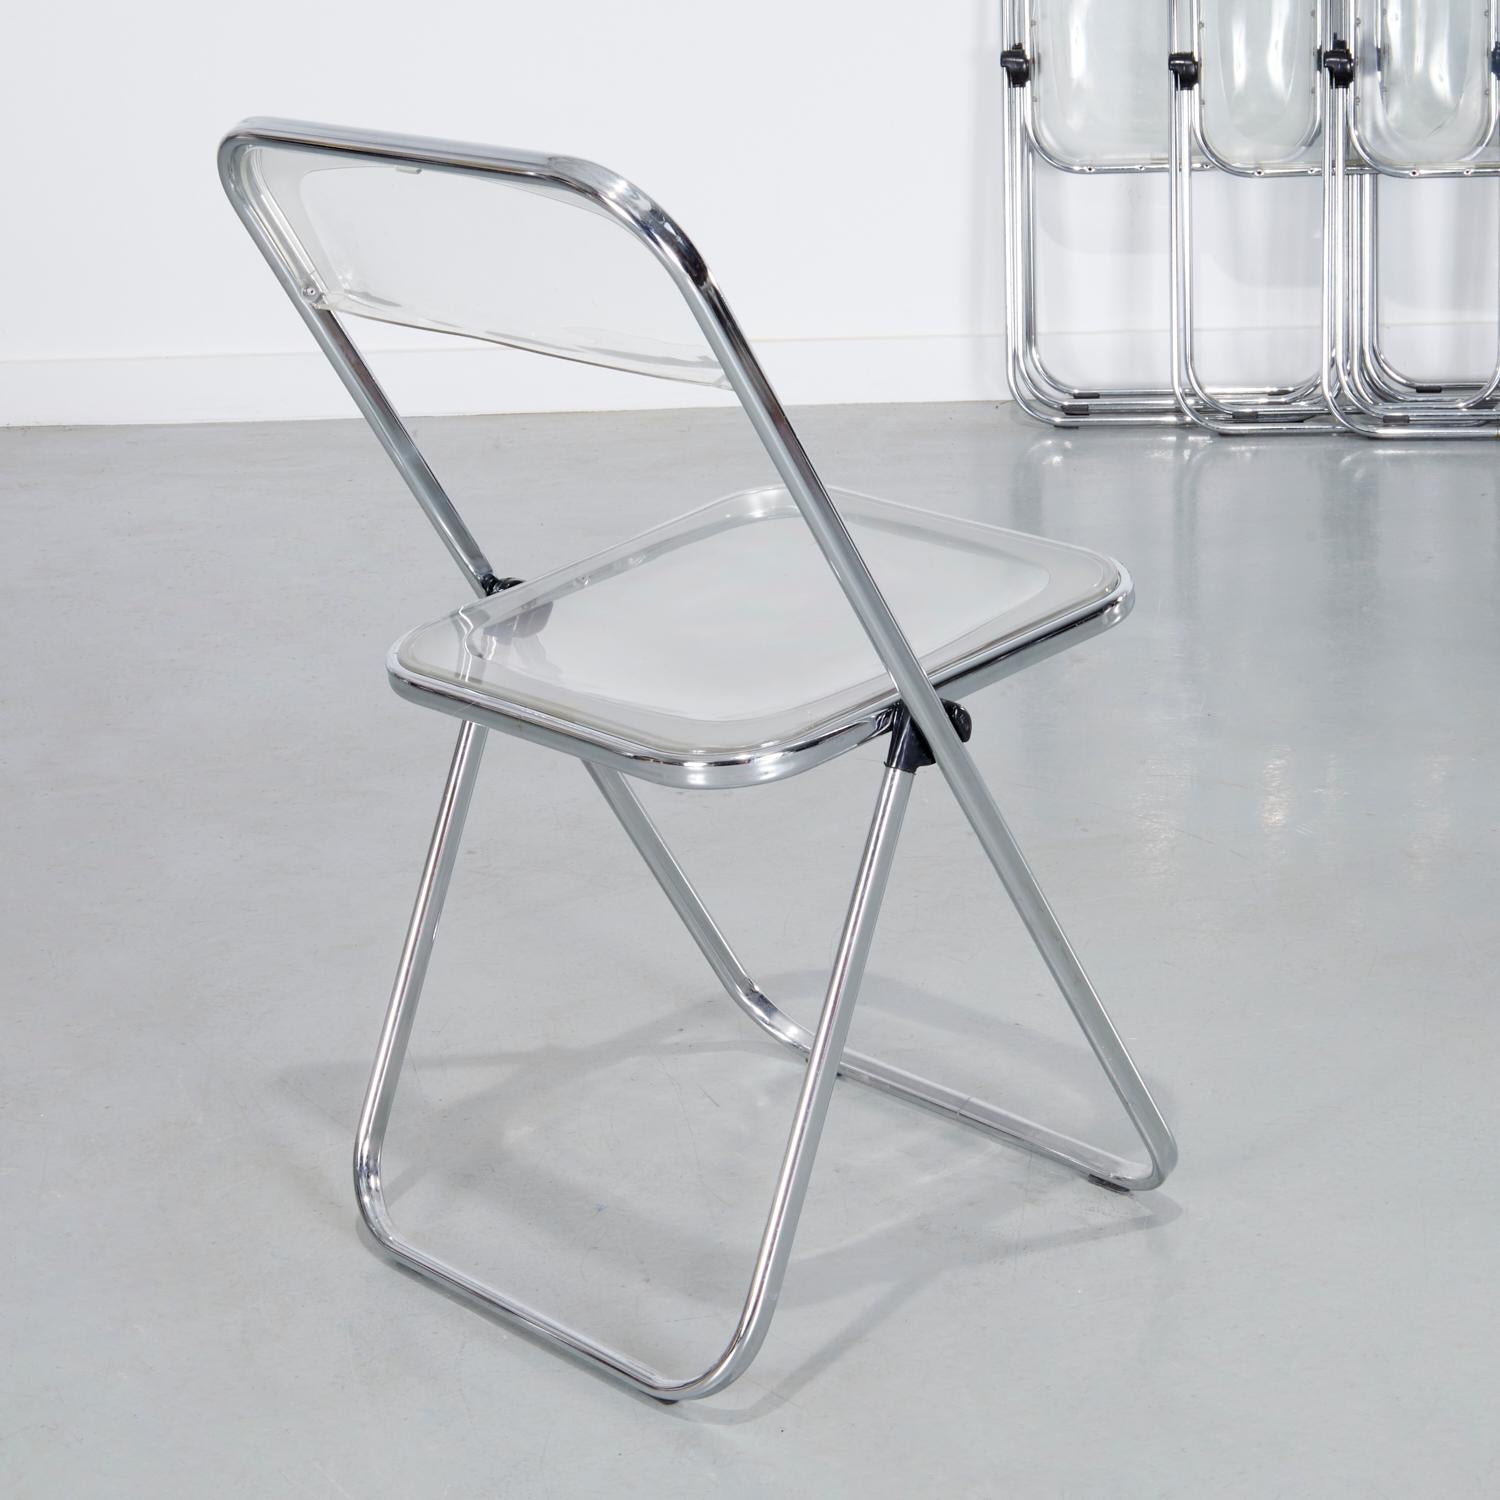 Molded 10 Italian Castelli Plea Style Clear Acrylic and Chrome Folding Chairs by Talin